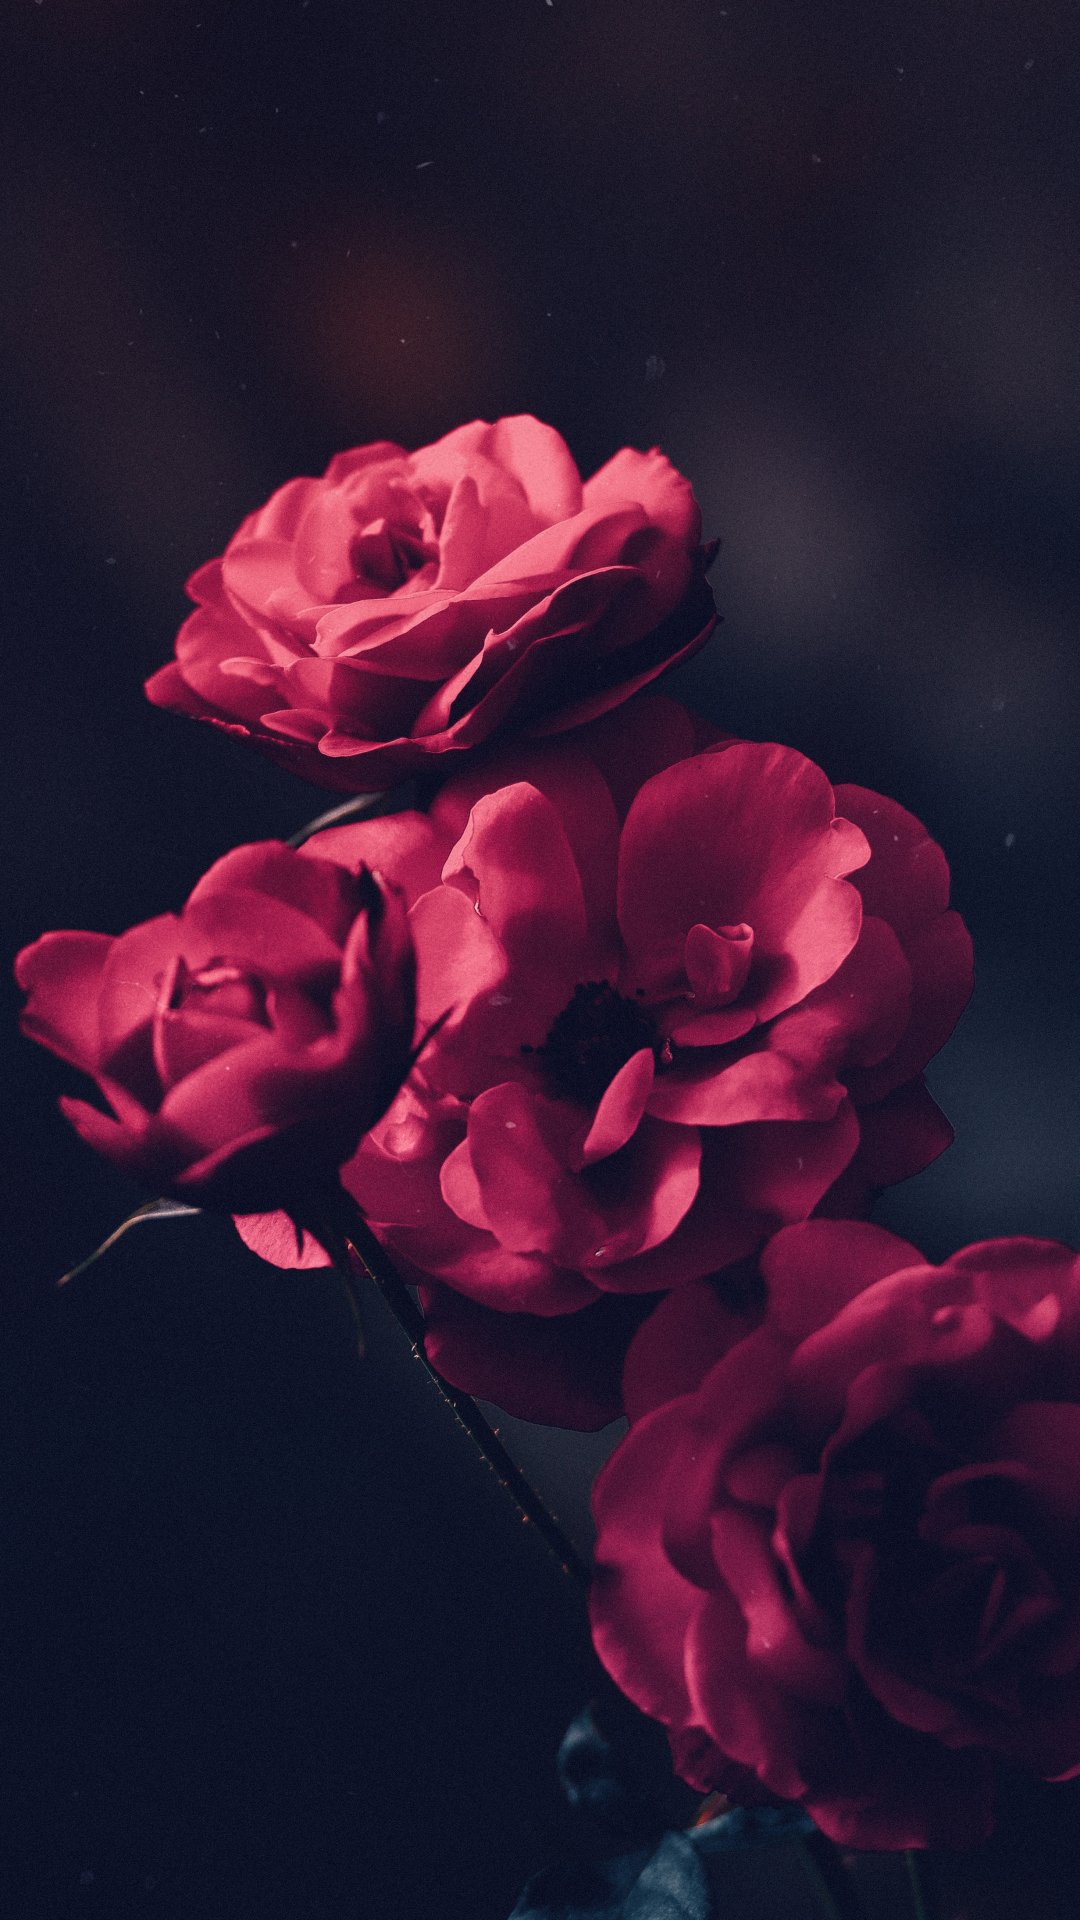 Garden roses dark Wallpapers Download | MobCup